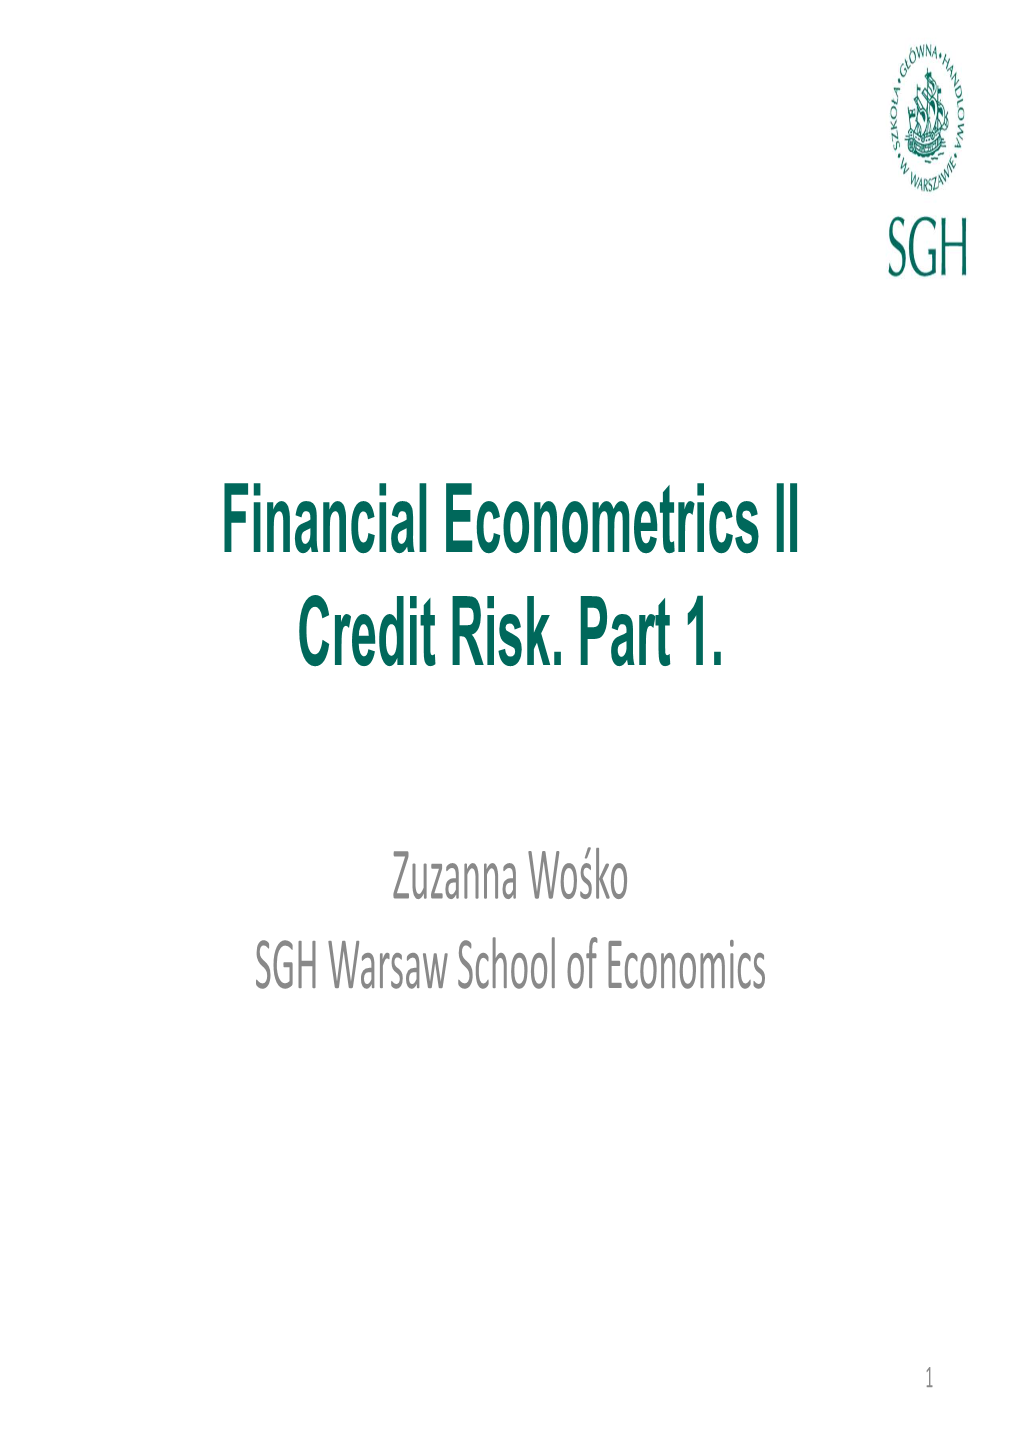 Financial Econometrics II Credit Risk. Part 1